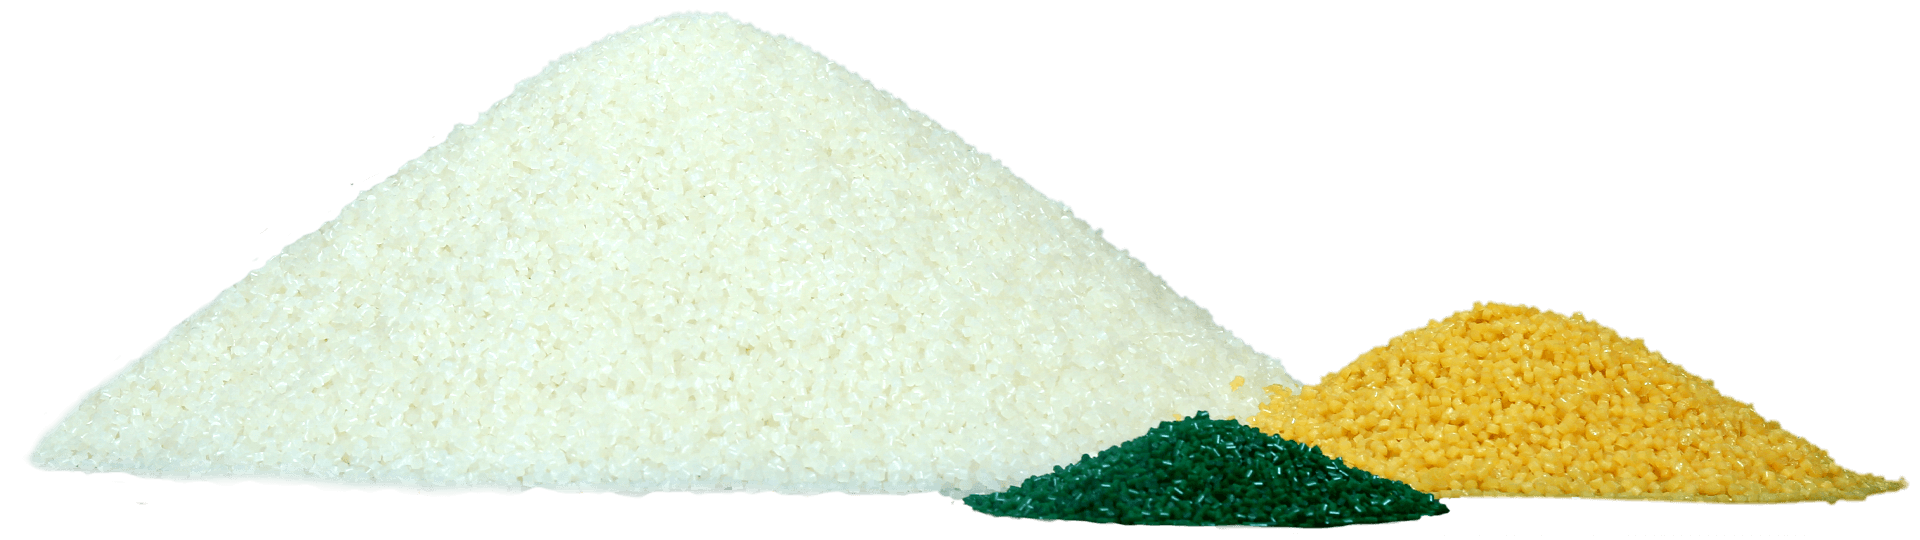 image of greenplast color pellet